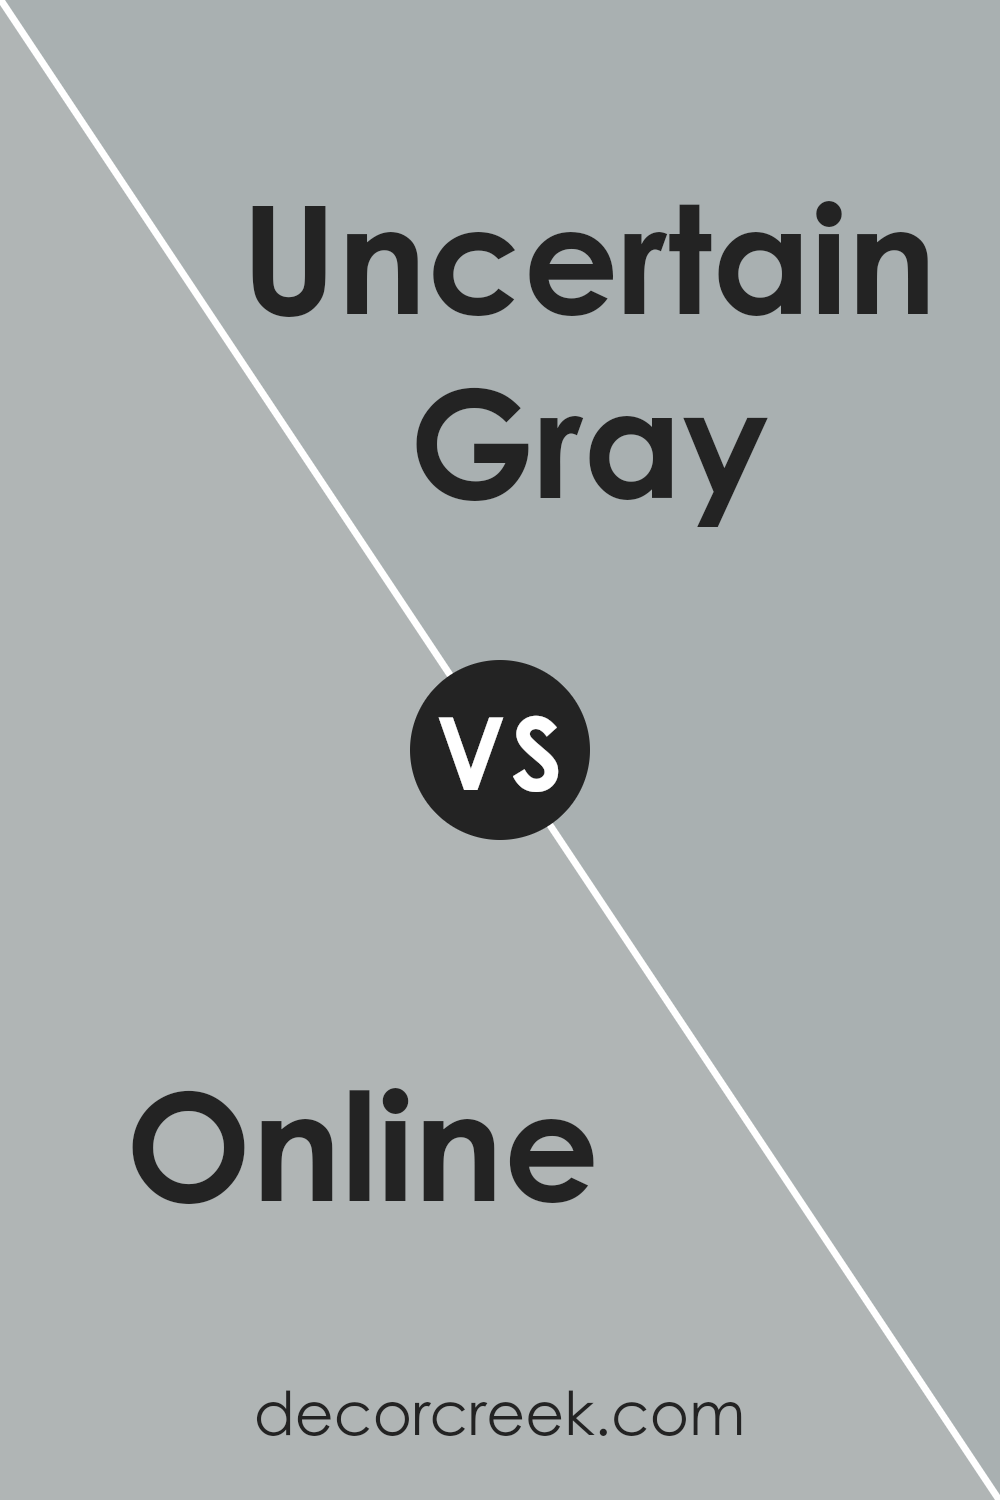 online_sw_7072_vs_uncertain_gray_sw_6234